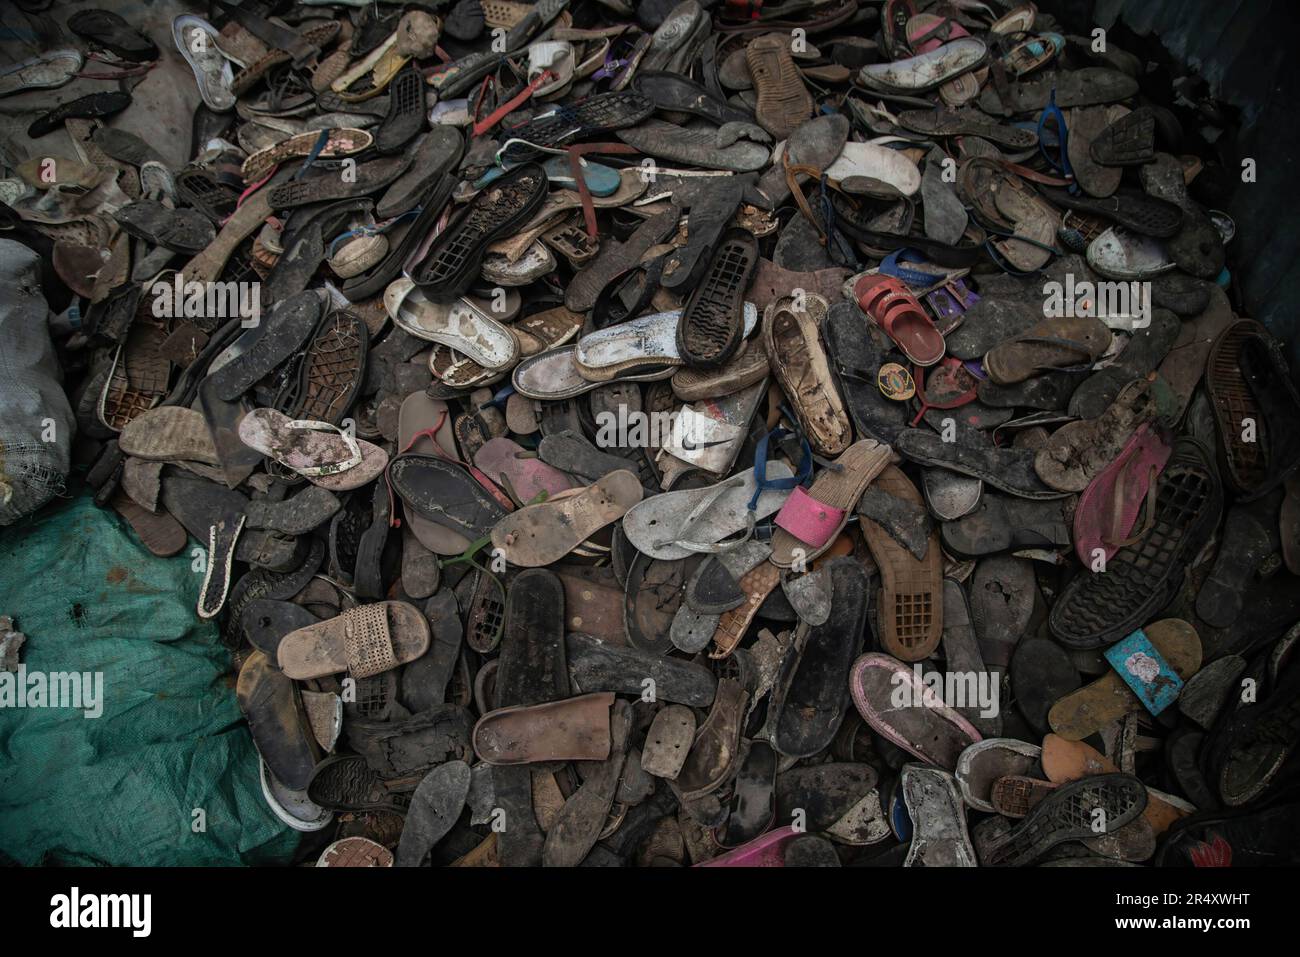 Ein Haufen Schuhabfälle in einer Kunststoff-Recyclinganlage in Nakuru. In Paris, Frankreich, haben sich Verhandlungsführer für die zweite Runde der Beratungen versammelt, um einen globalen Vertrag zu entwickeln, der das eskalierende Problem der Plastikverschmutzung angehen soll. Einem kürzlich veröffentlichten Bericht des Umweltprogramms der Vereinten Nationen (UNEP) zufolge haben die Länder das Potenzial, die Verschmutzung durch Kunststoffe bis 2040 um 80 % zu reduzieren, indem sie unnötige Kunststoffe beseitigen, Recycling- und Wiederverwendungsstrategien umsetzen, Pfandsysteme einführen und Kunststoff durch nachhaltige alternative Materialien ersetzen. Stockfoto